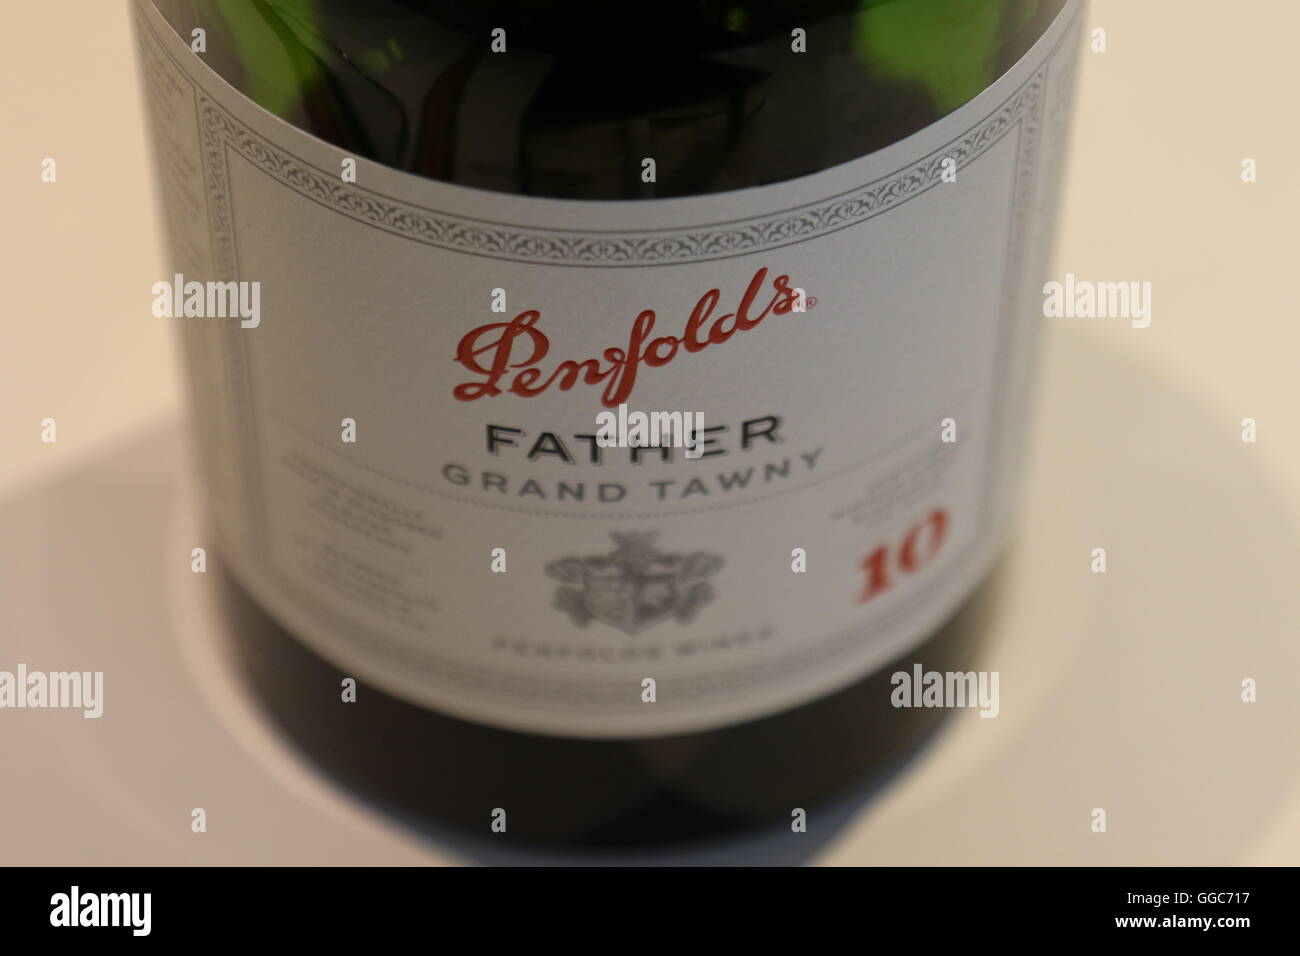 Bottiglia ed etichetta di Penfolds Vini Barossa Valley, Australia Foto Stock